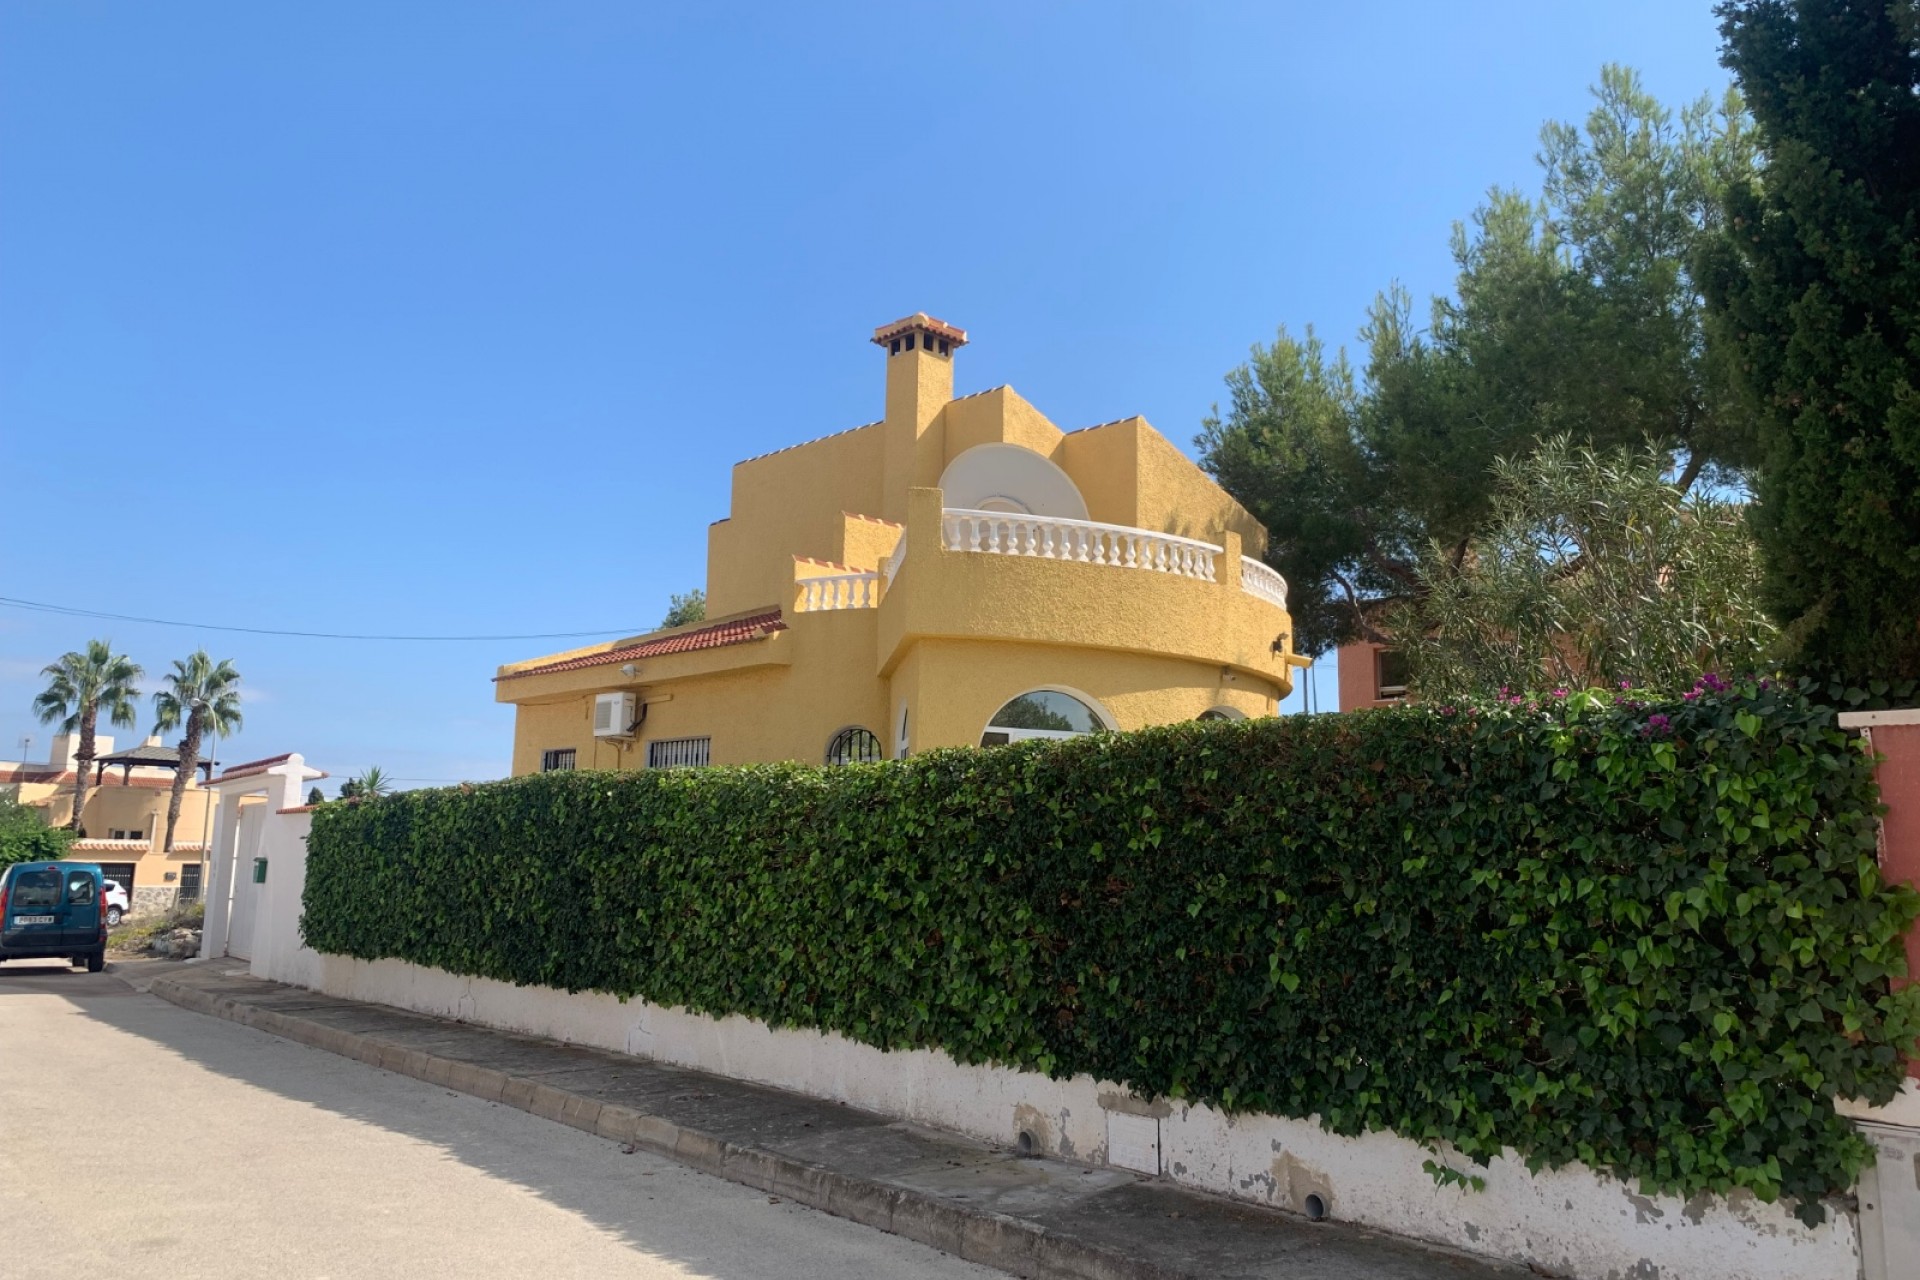 3 bedroom house / villa for sale in San Miguel de Salinas, Costa Blanca